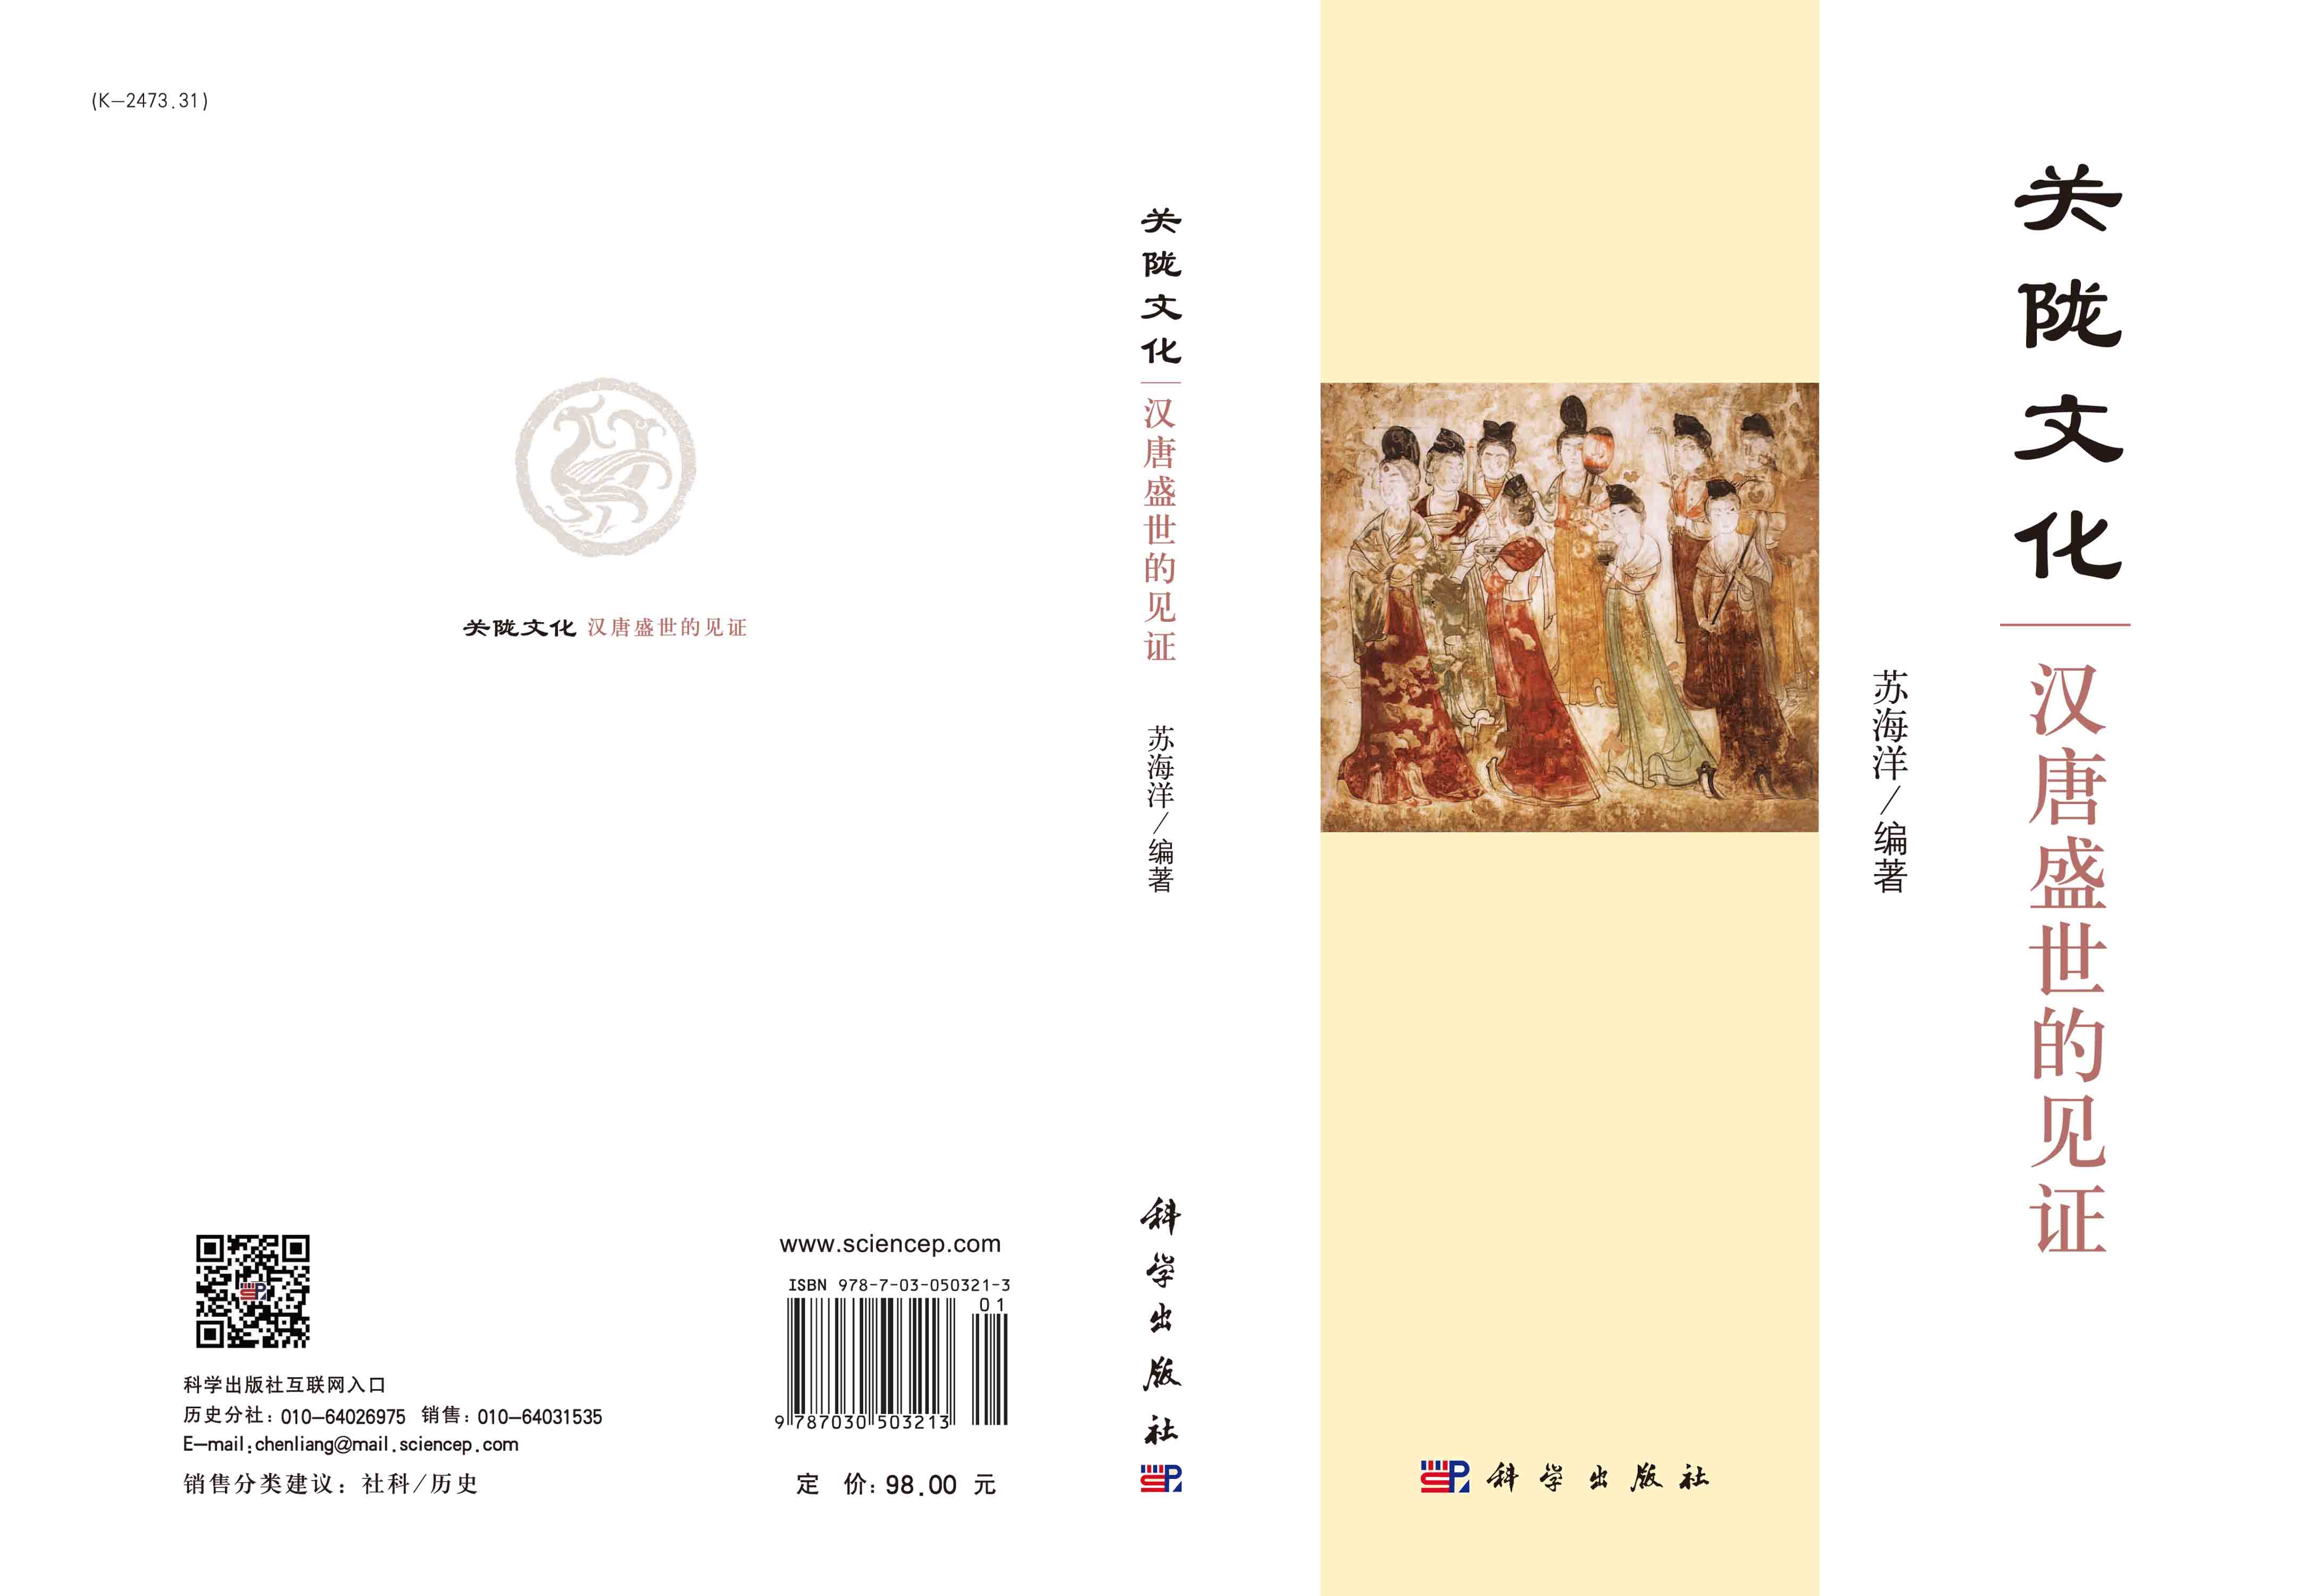 关陇文化——汉唐盛世的见证